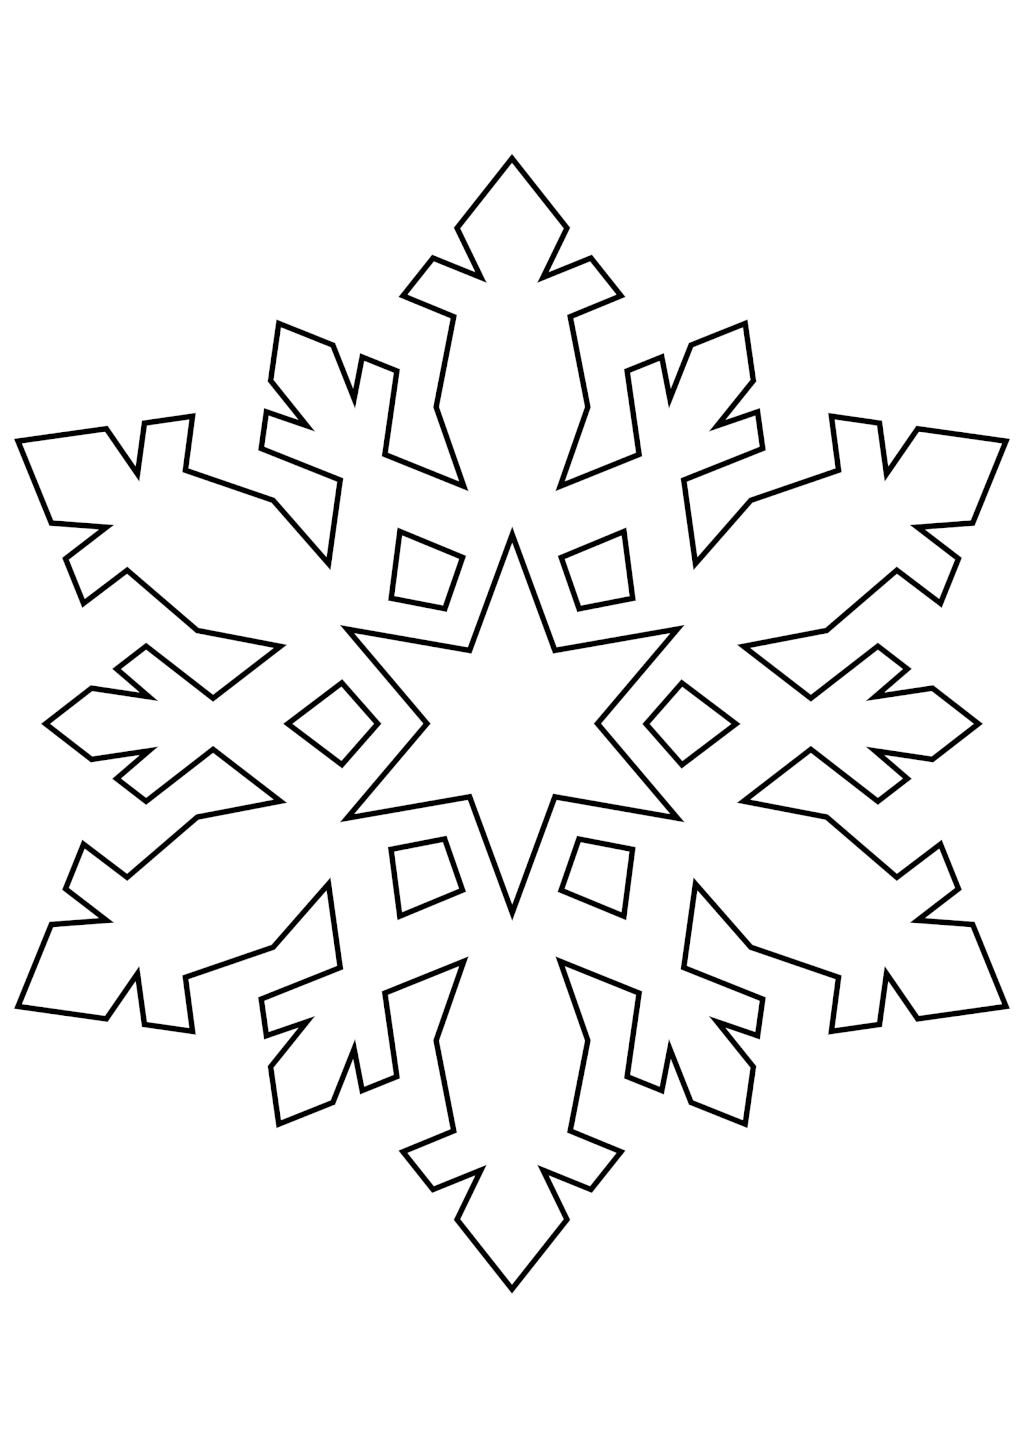 Снежинки из бумаги своими руками: пошаговые инструкции